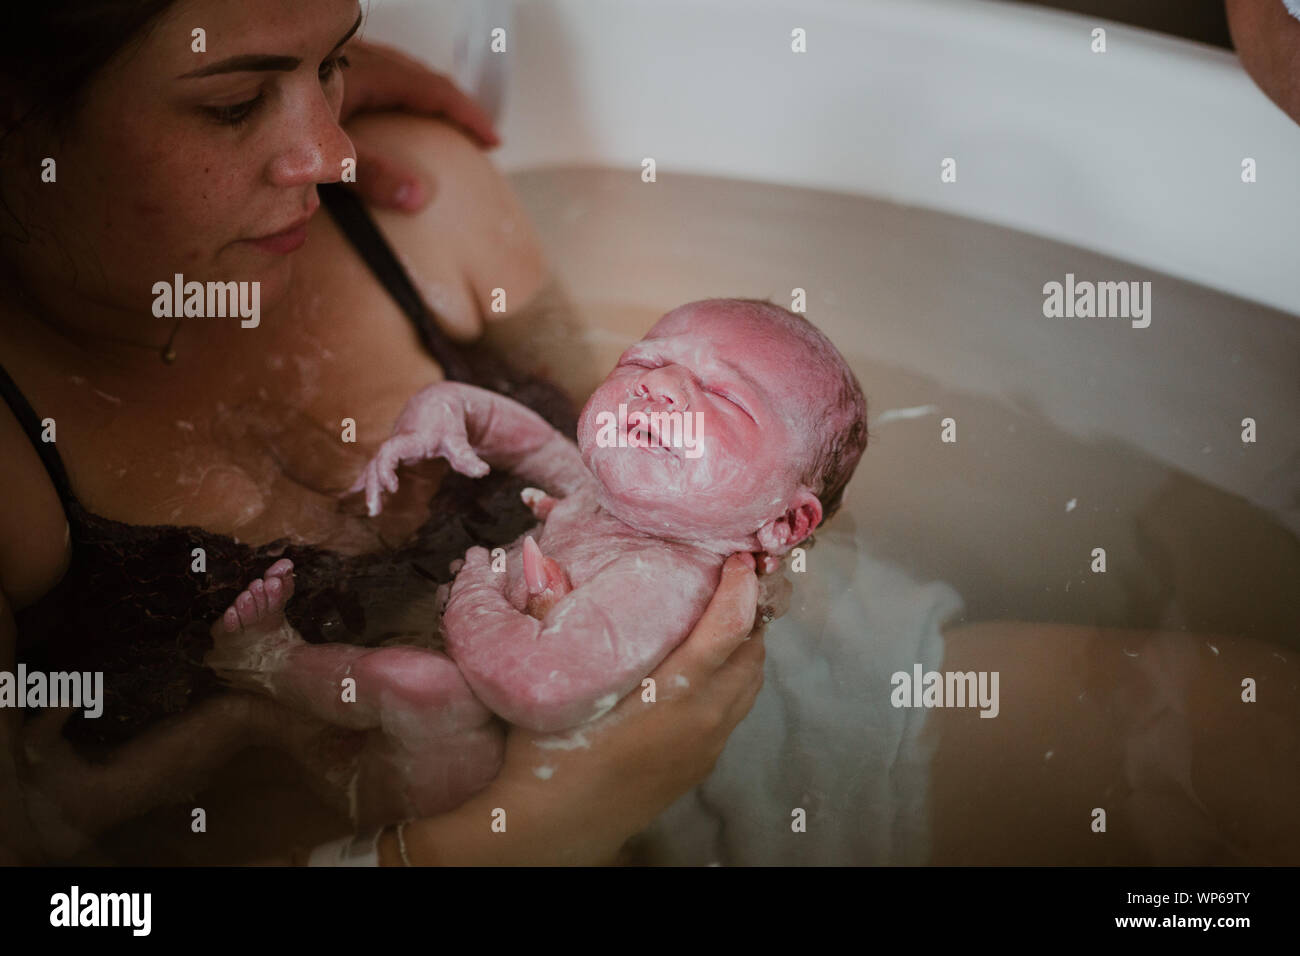 Auténticas imágenes de nacimiento, parto en piscina Foto de stock